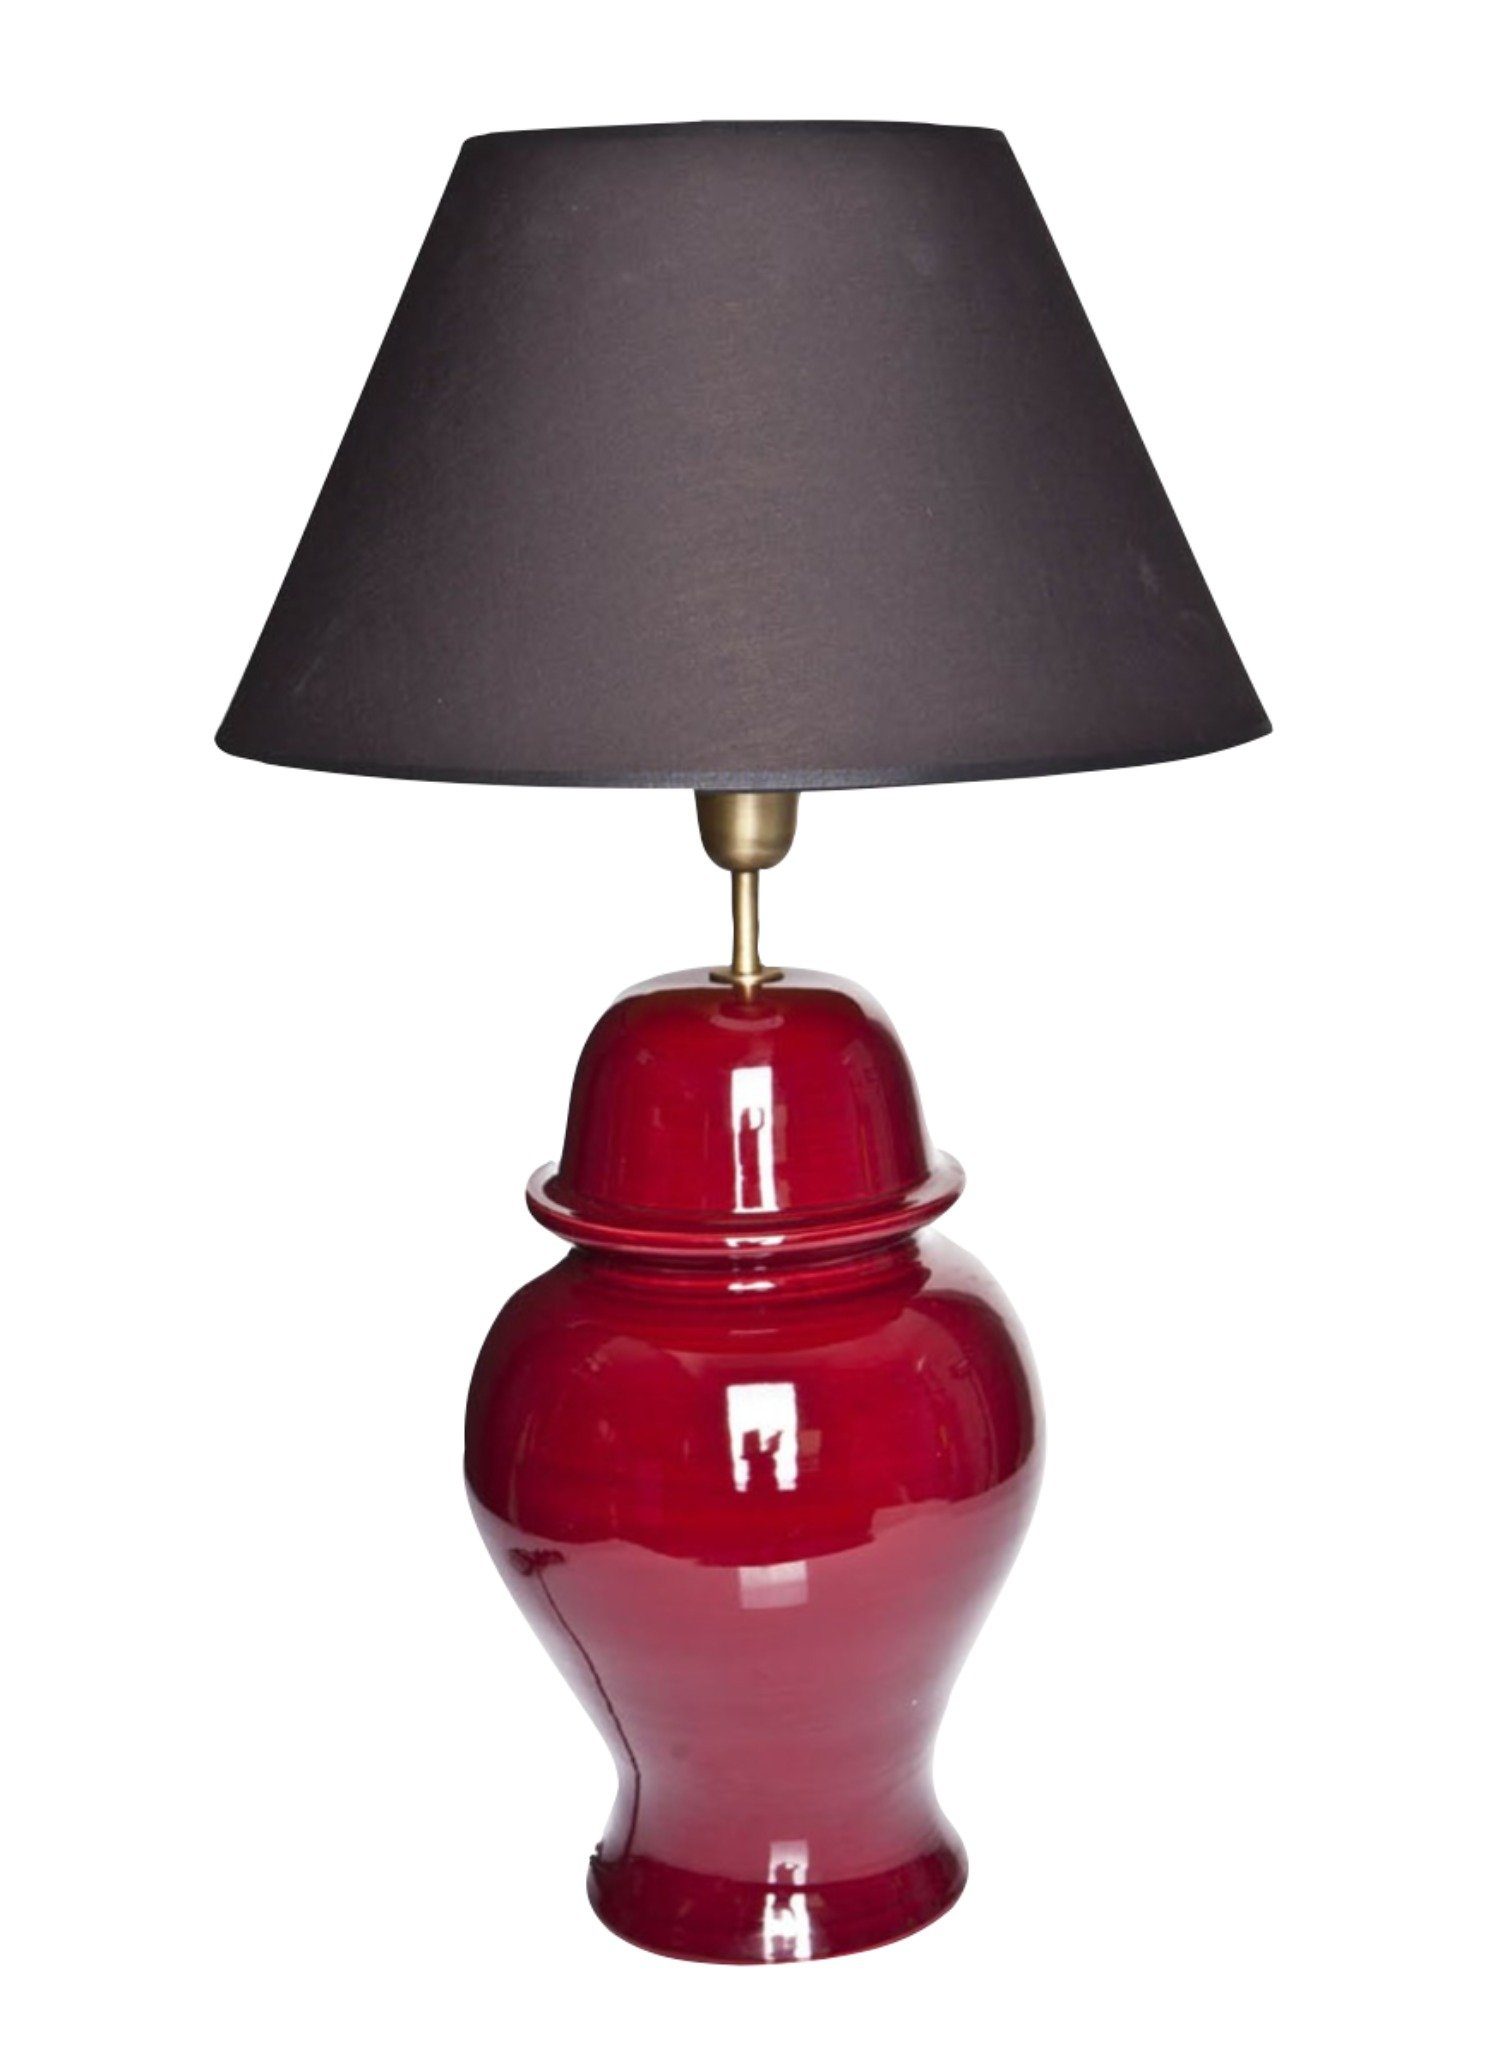 Signature Home Collection Schreibtischlampe, ohne Leuchtmittel, warmweiß, Tischlampe Keramik rot mit Lampenschirm